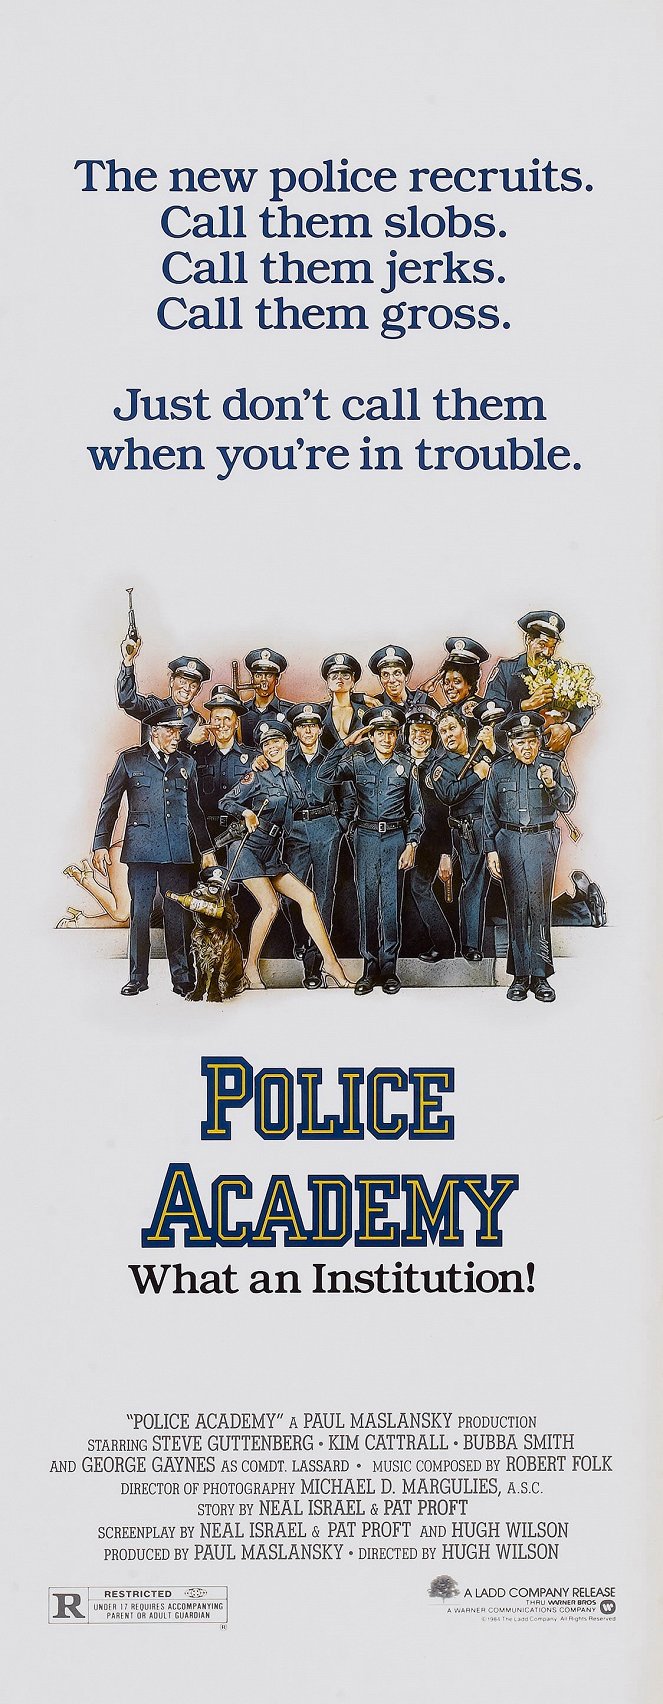 Police Academy - Dümmer als die Polizei erlaubt - Plakate